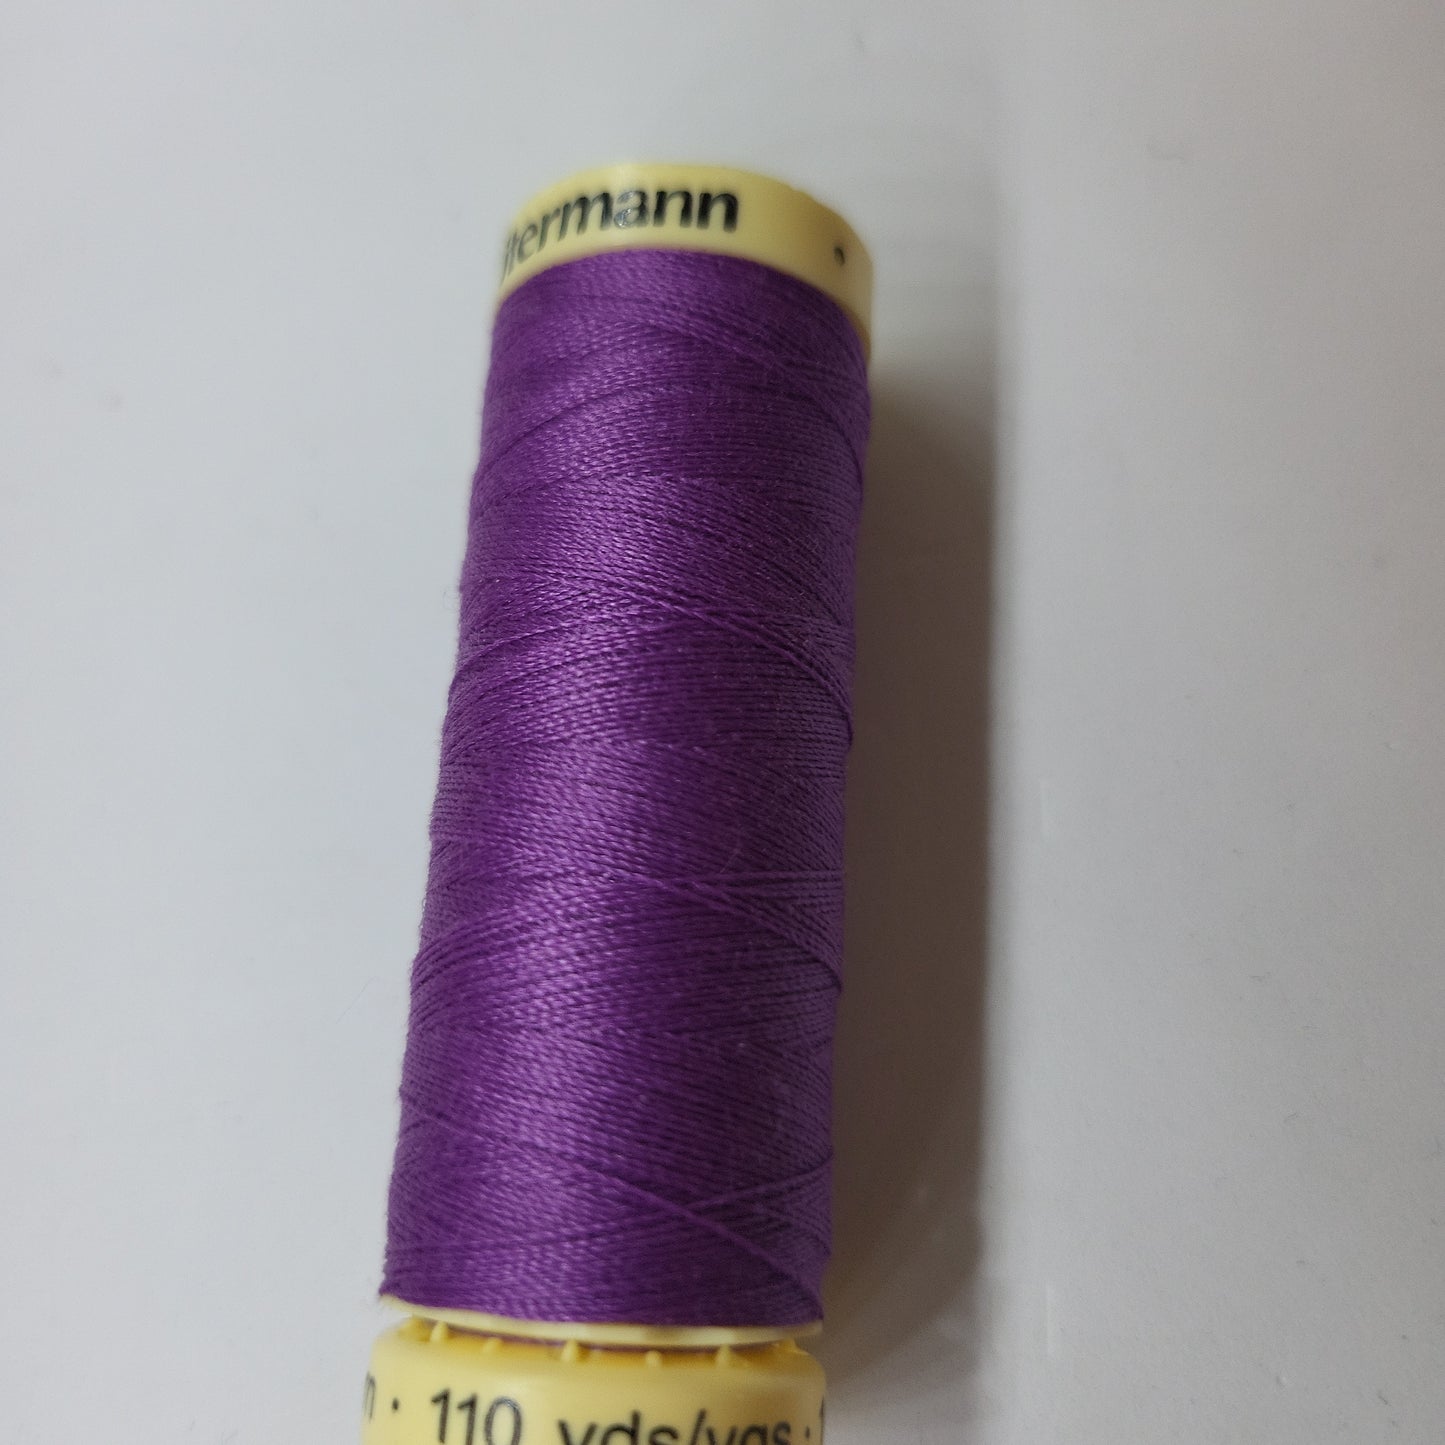 571 Sew-All Thread